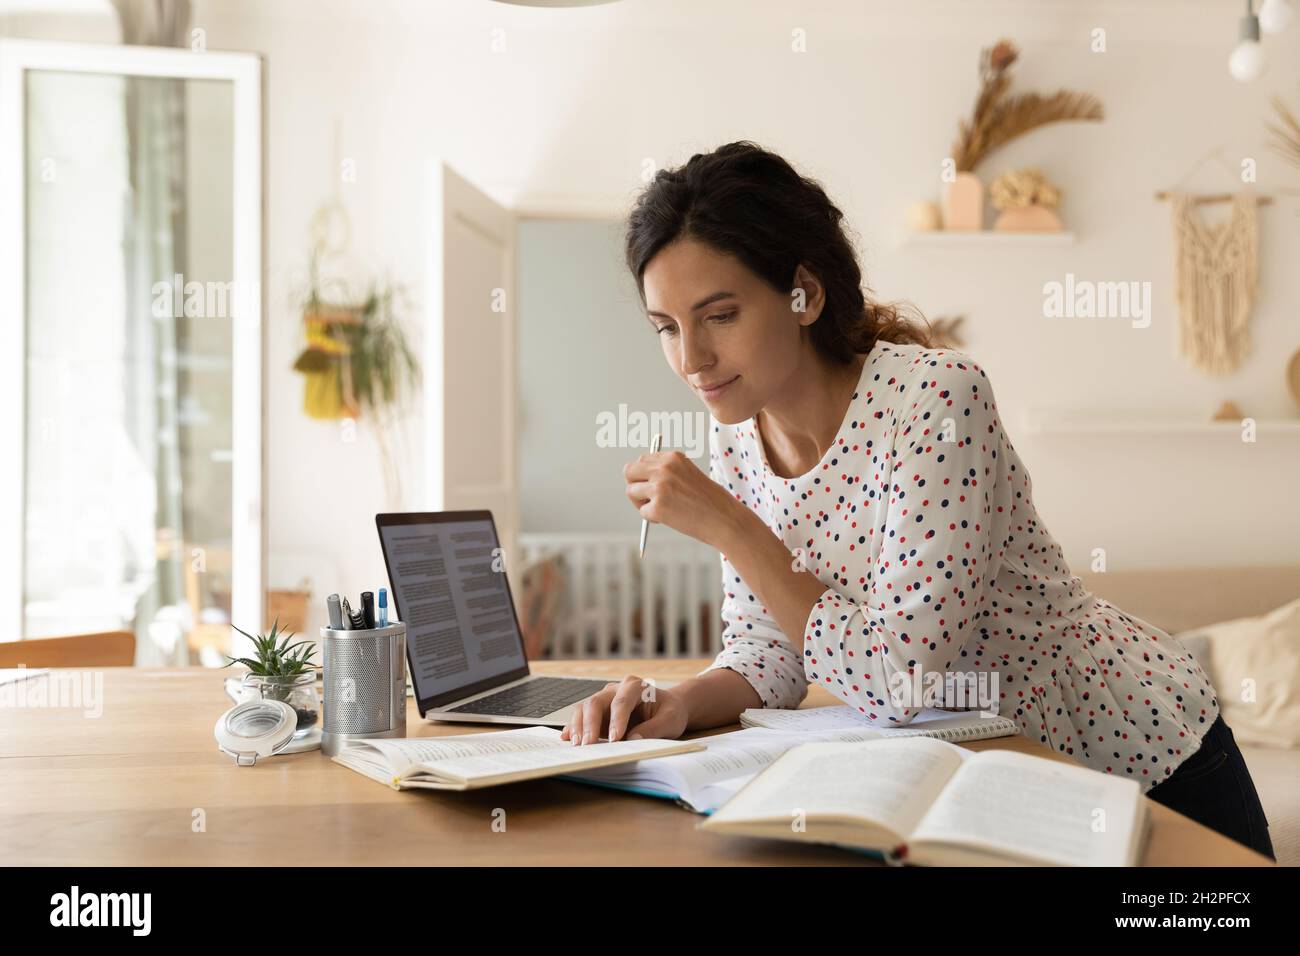 Fokussierte Erwachsene Studentin, die Hausaufgaben macht, Bücher am Laptop liest Stockfoto